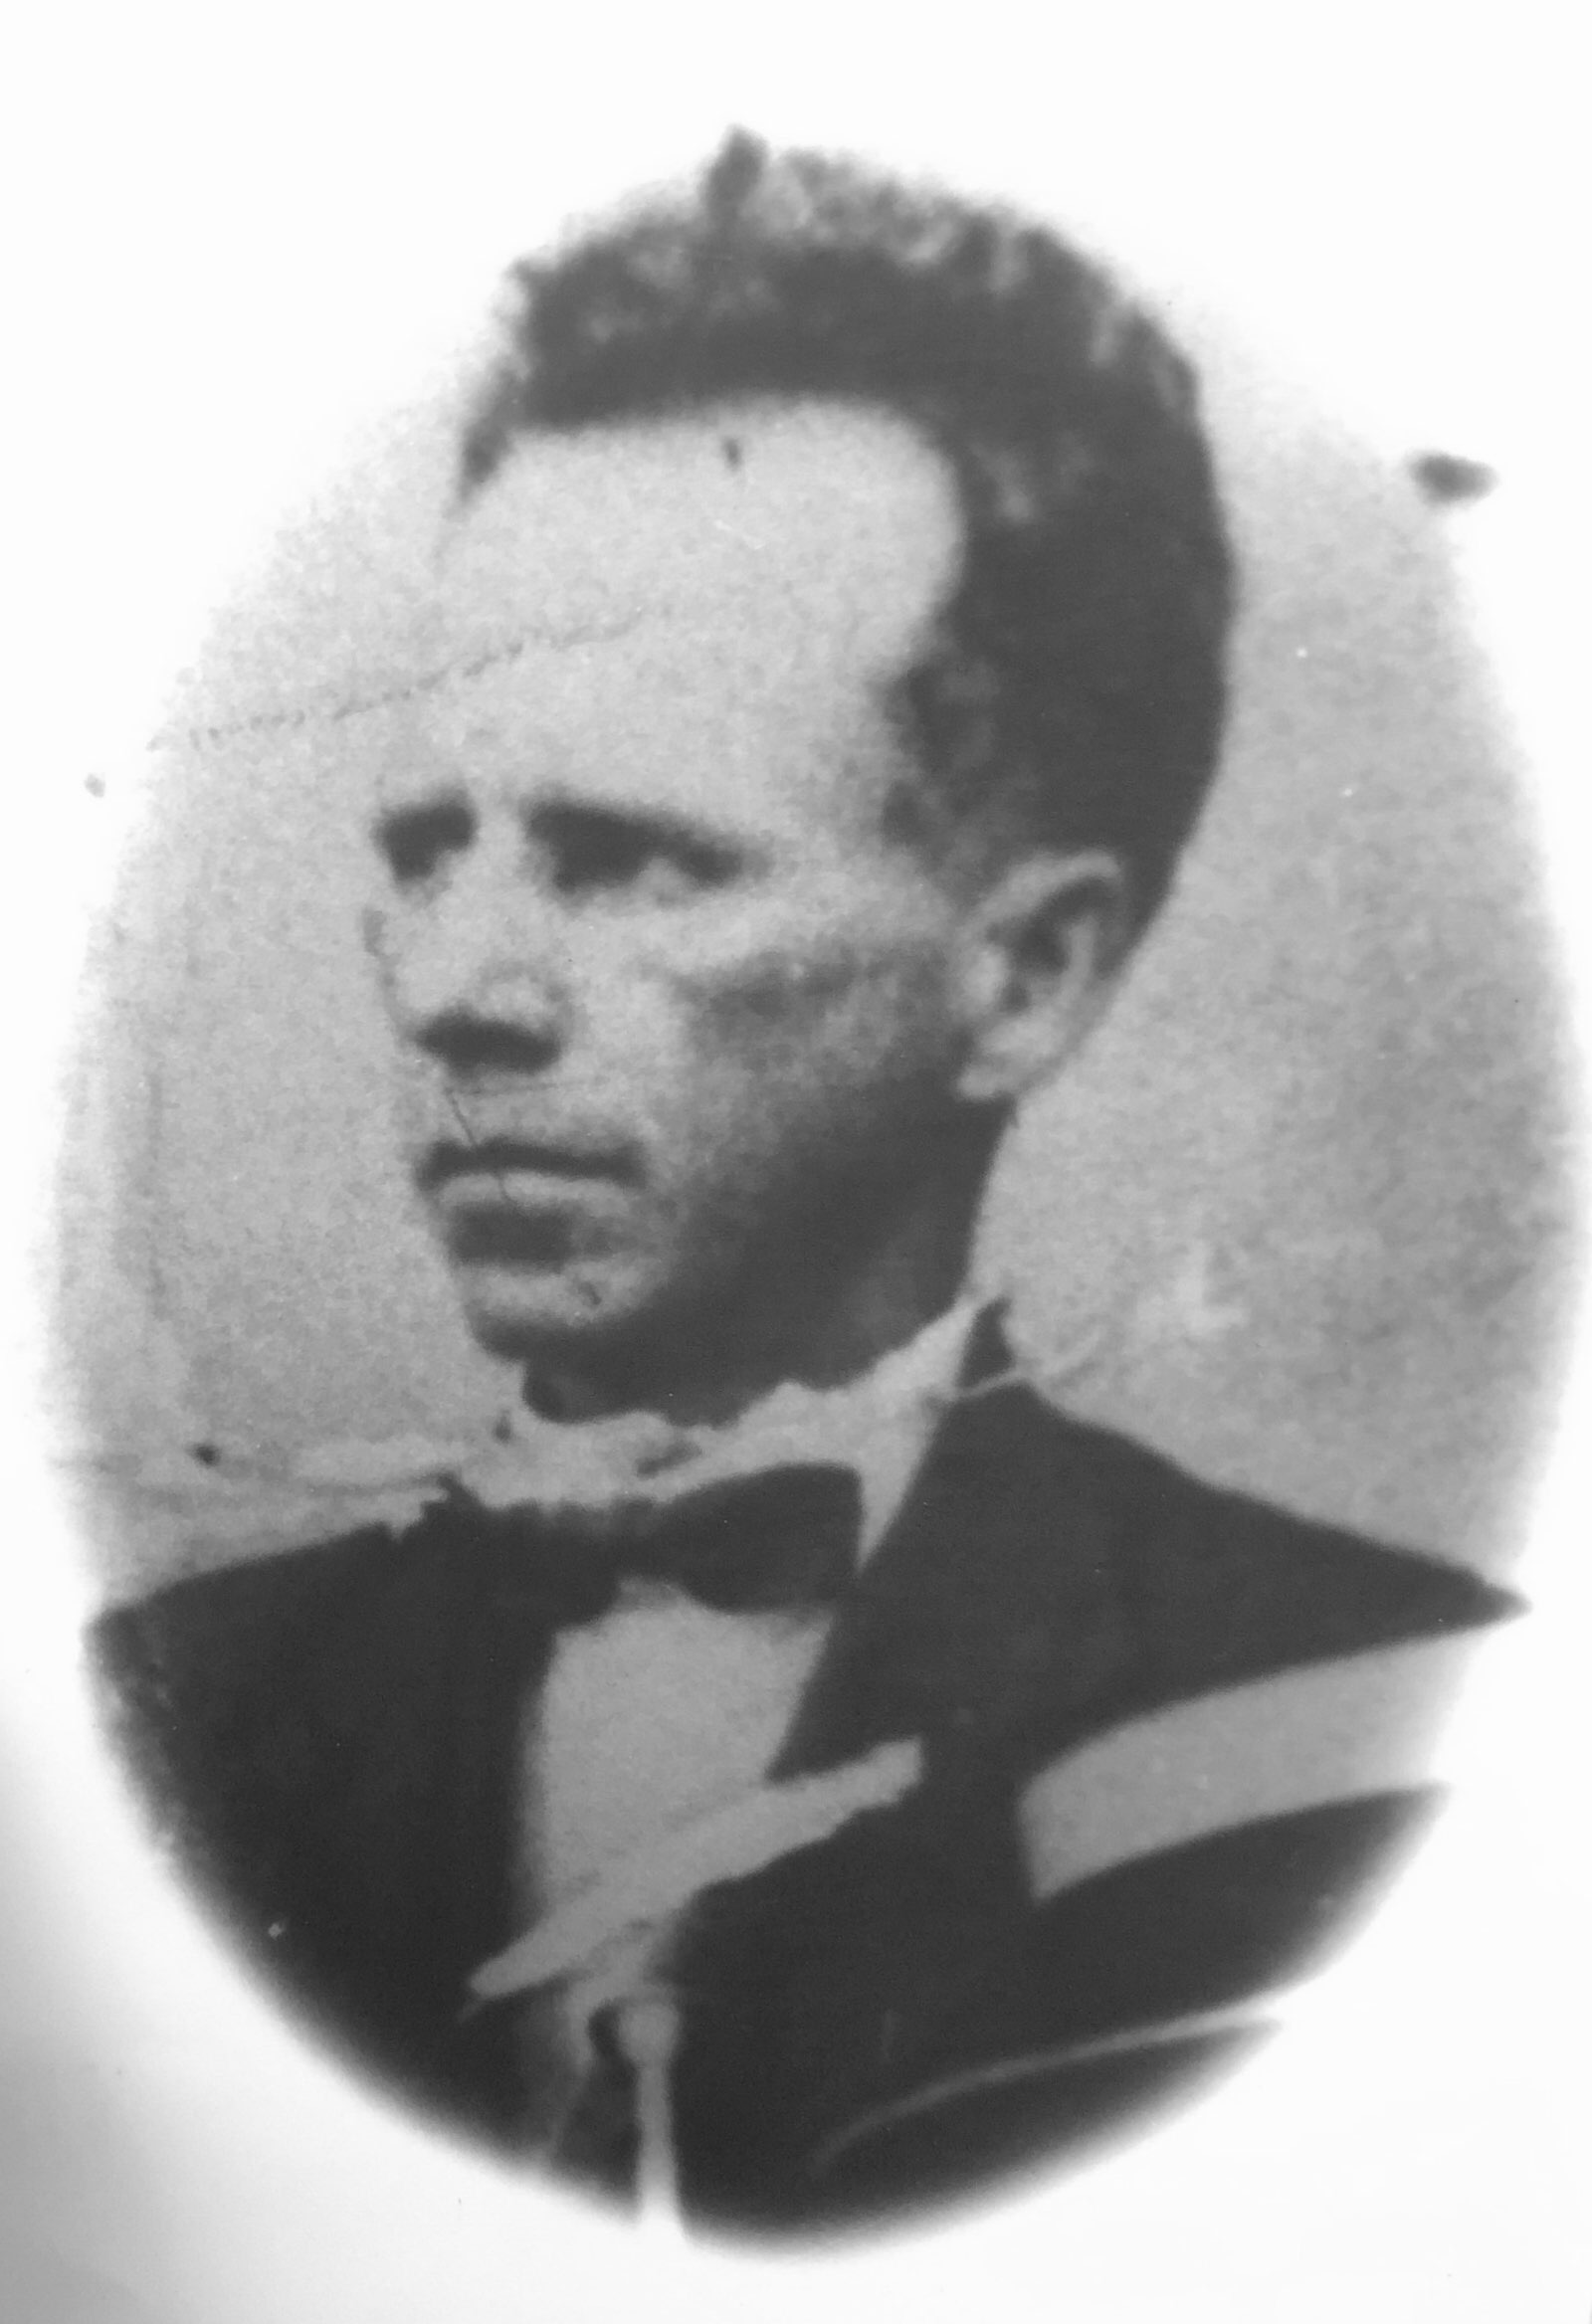 Geraldo Gomes de Azevedo (1910 - 1911)